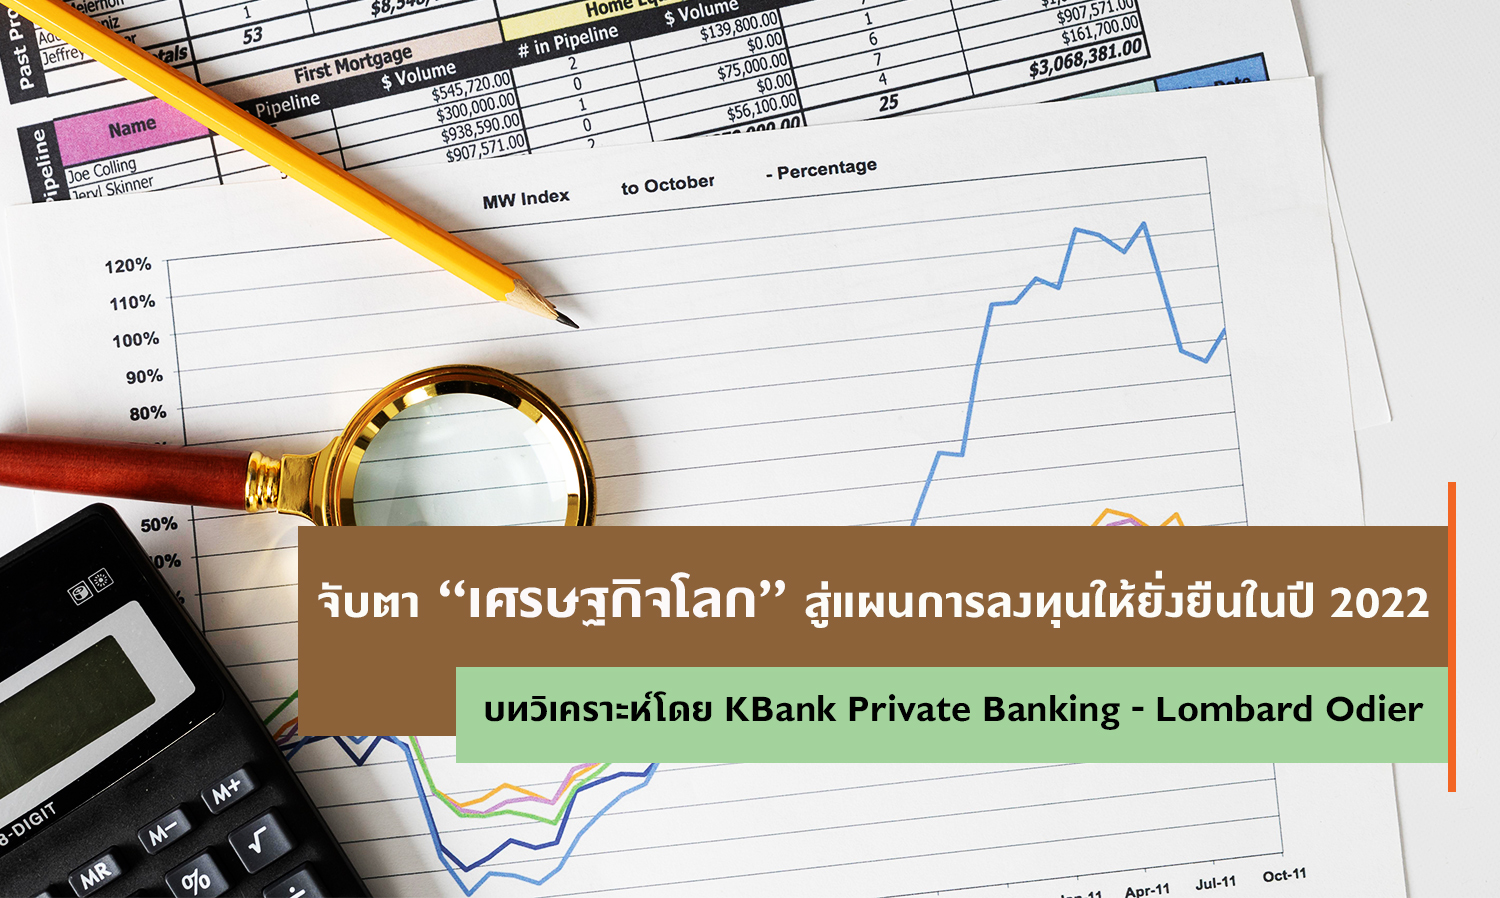 จับตาเศรษฐกิจโลก สู่แผนการลงทุนให้ยั่งยืนในปี 2022 บทวิเคราะห์โดย KBank Private Banking - Lombard Odier